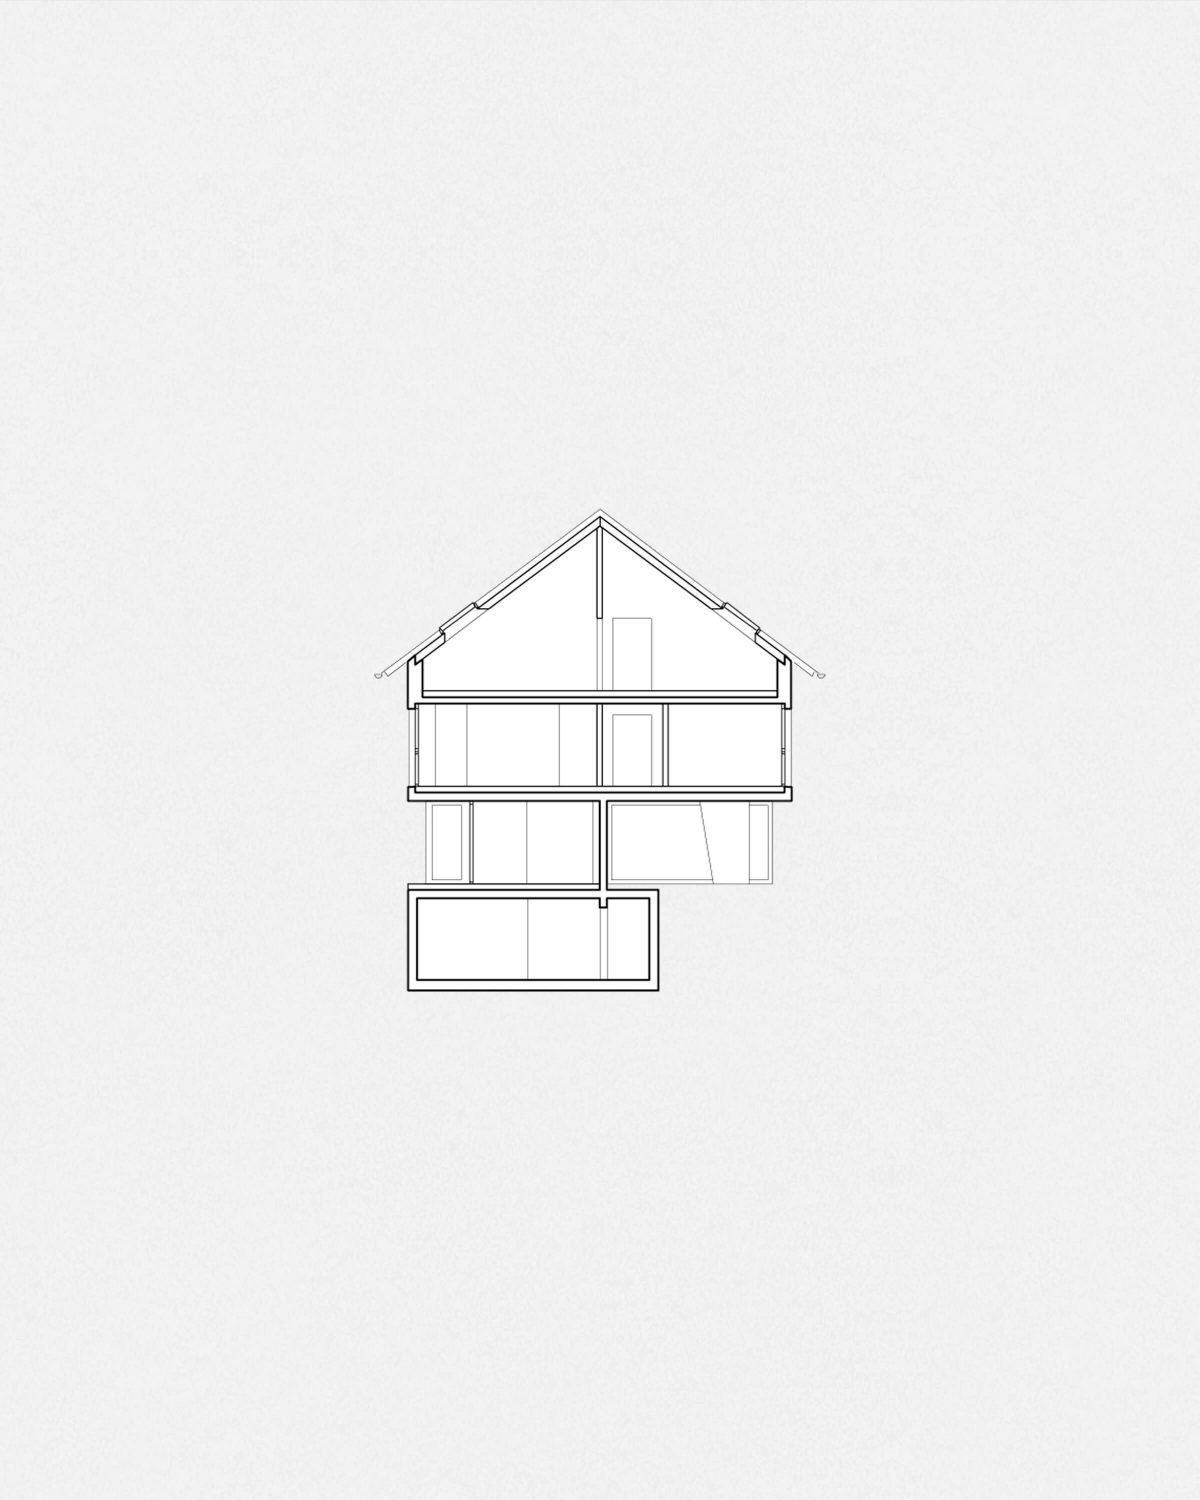 Apartment House Baselstrasse by Felippi Wyssen Architects